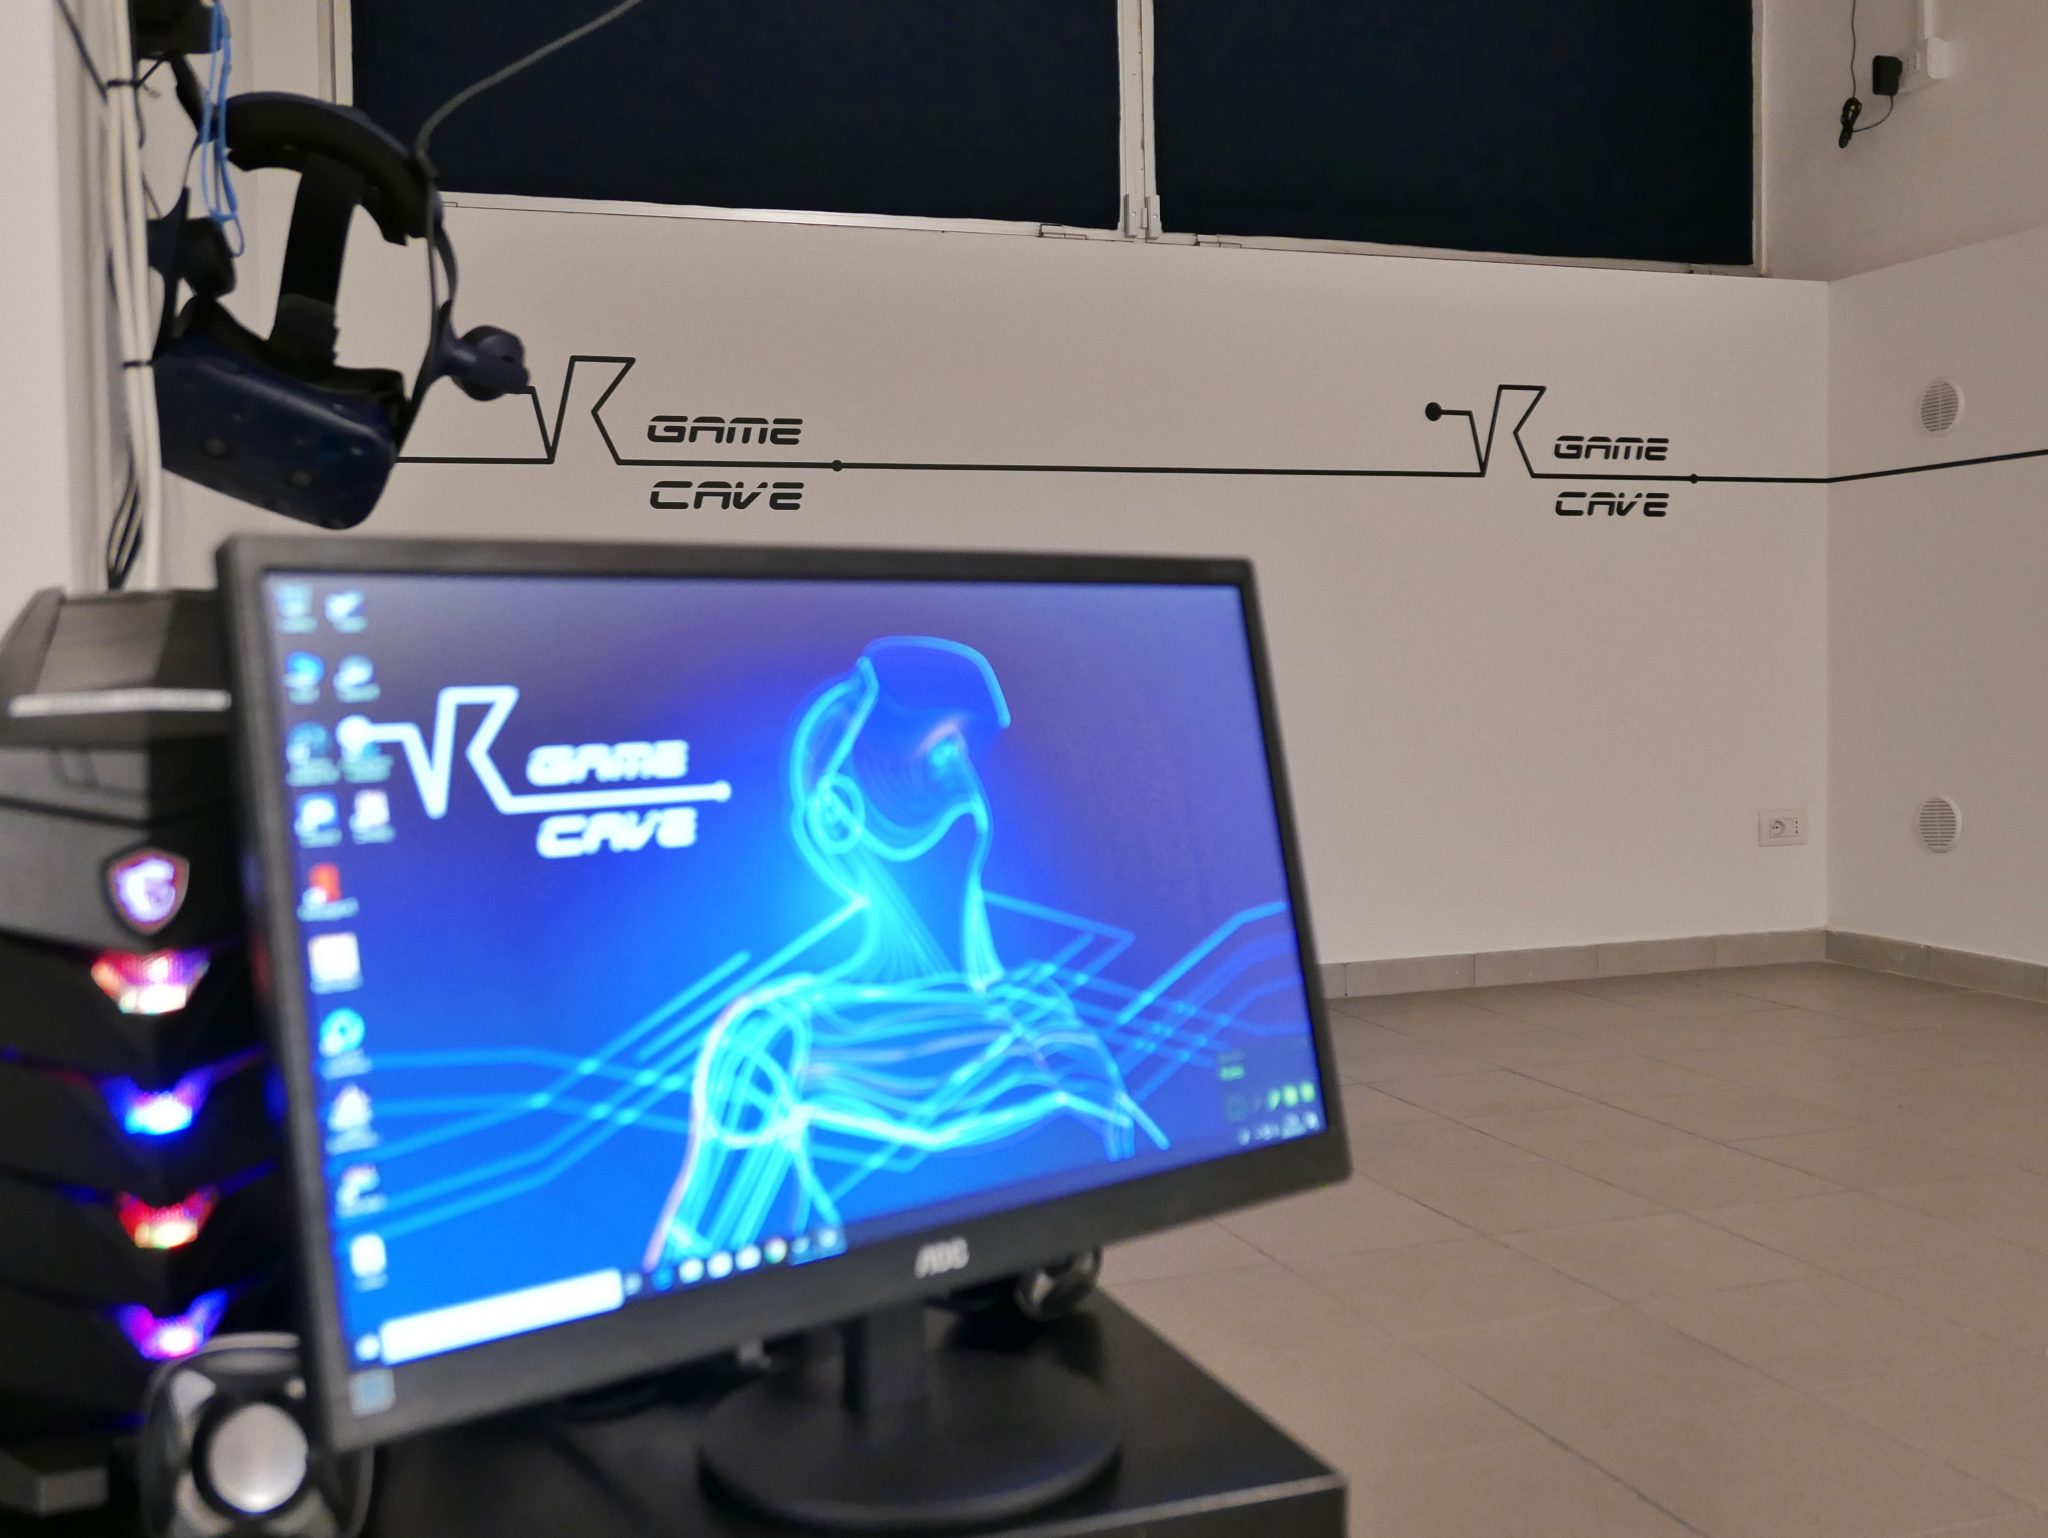 vr game cave realtà virtuale milano benessere tecnologico psicologia laura fasano sala giochi simulatore